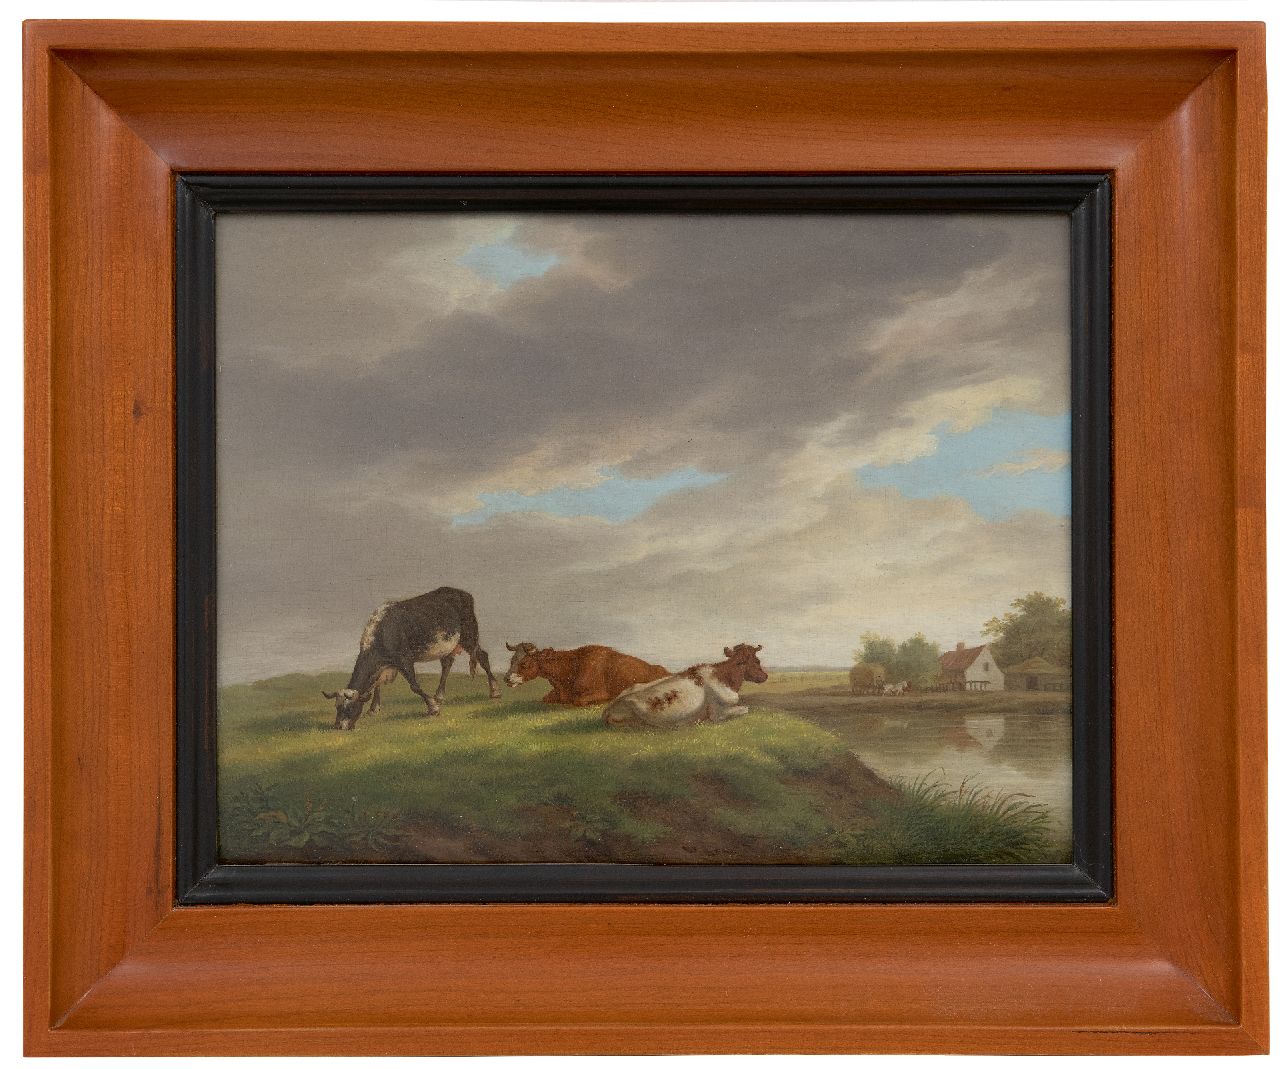 Burgh H.A. van der | Hendrik Adam van der Burgh | Schilderijen te koop aangeboden | Koeien in een landschap met boerderij, olieverf op paneel 20,4 x 26,3 cm, gesigneerd linksonder en gedateerd 1821